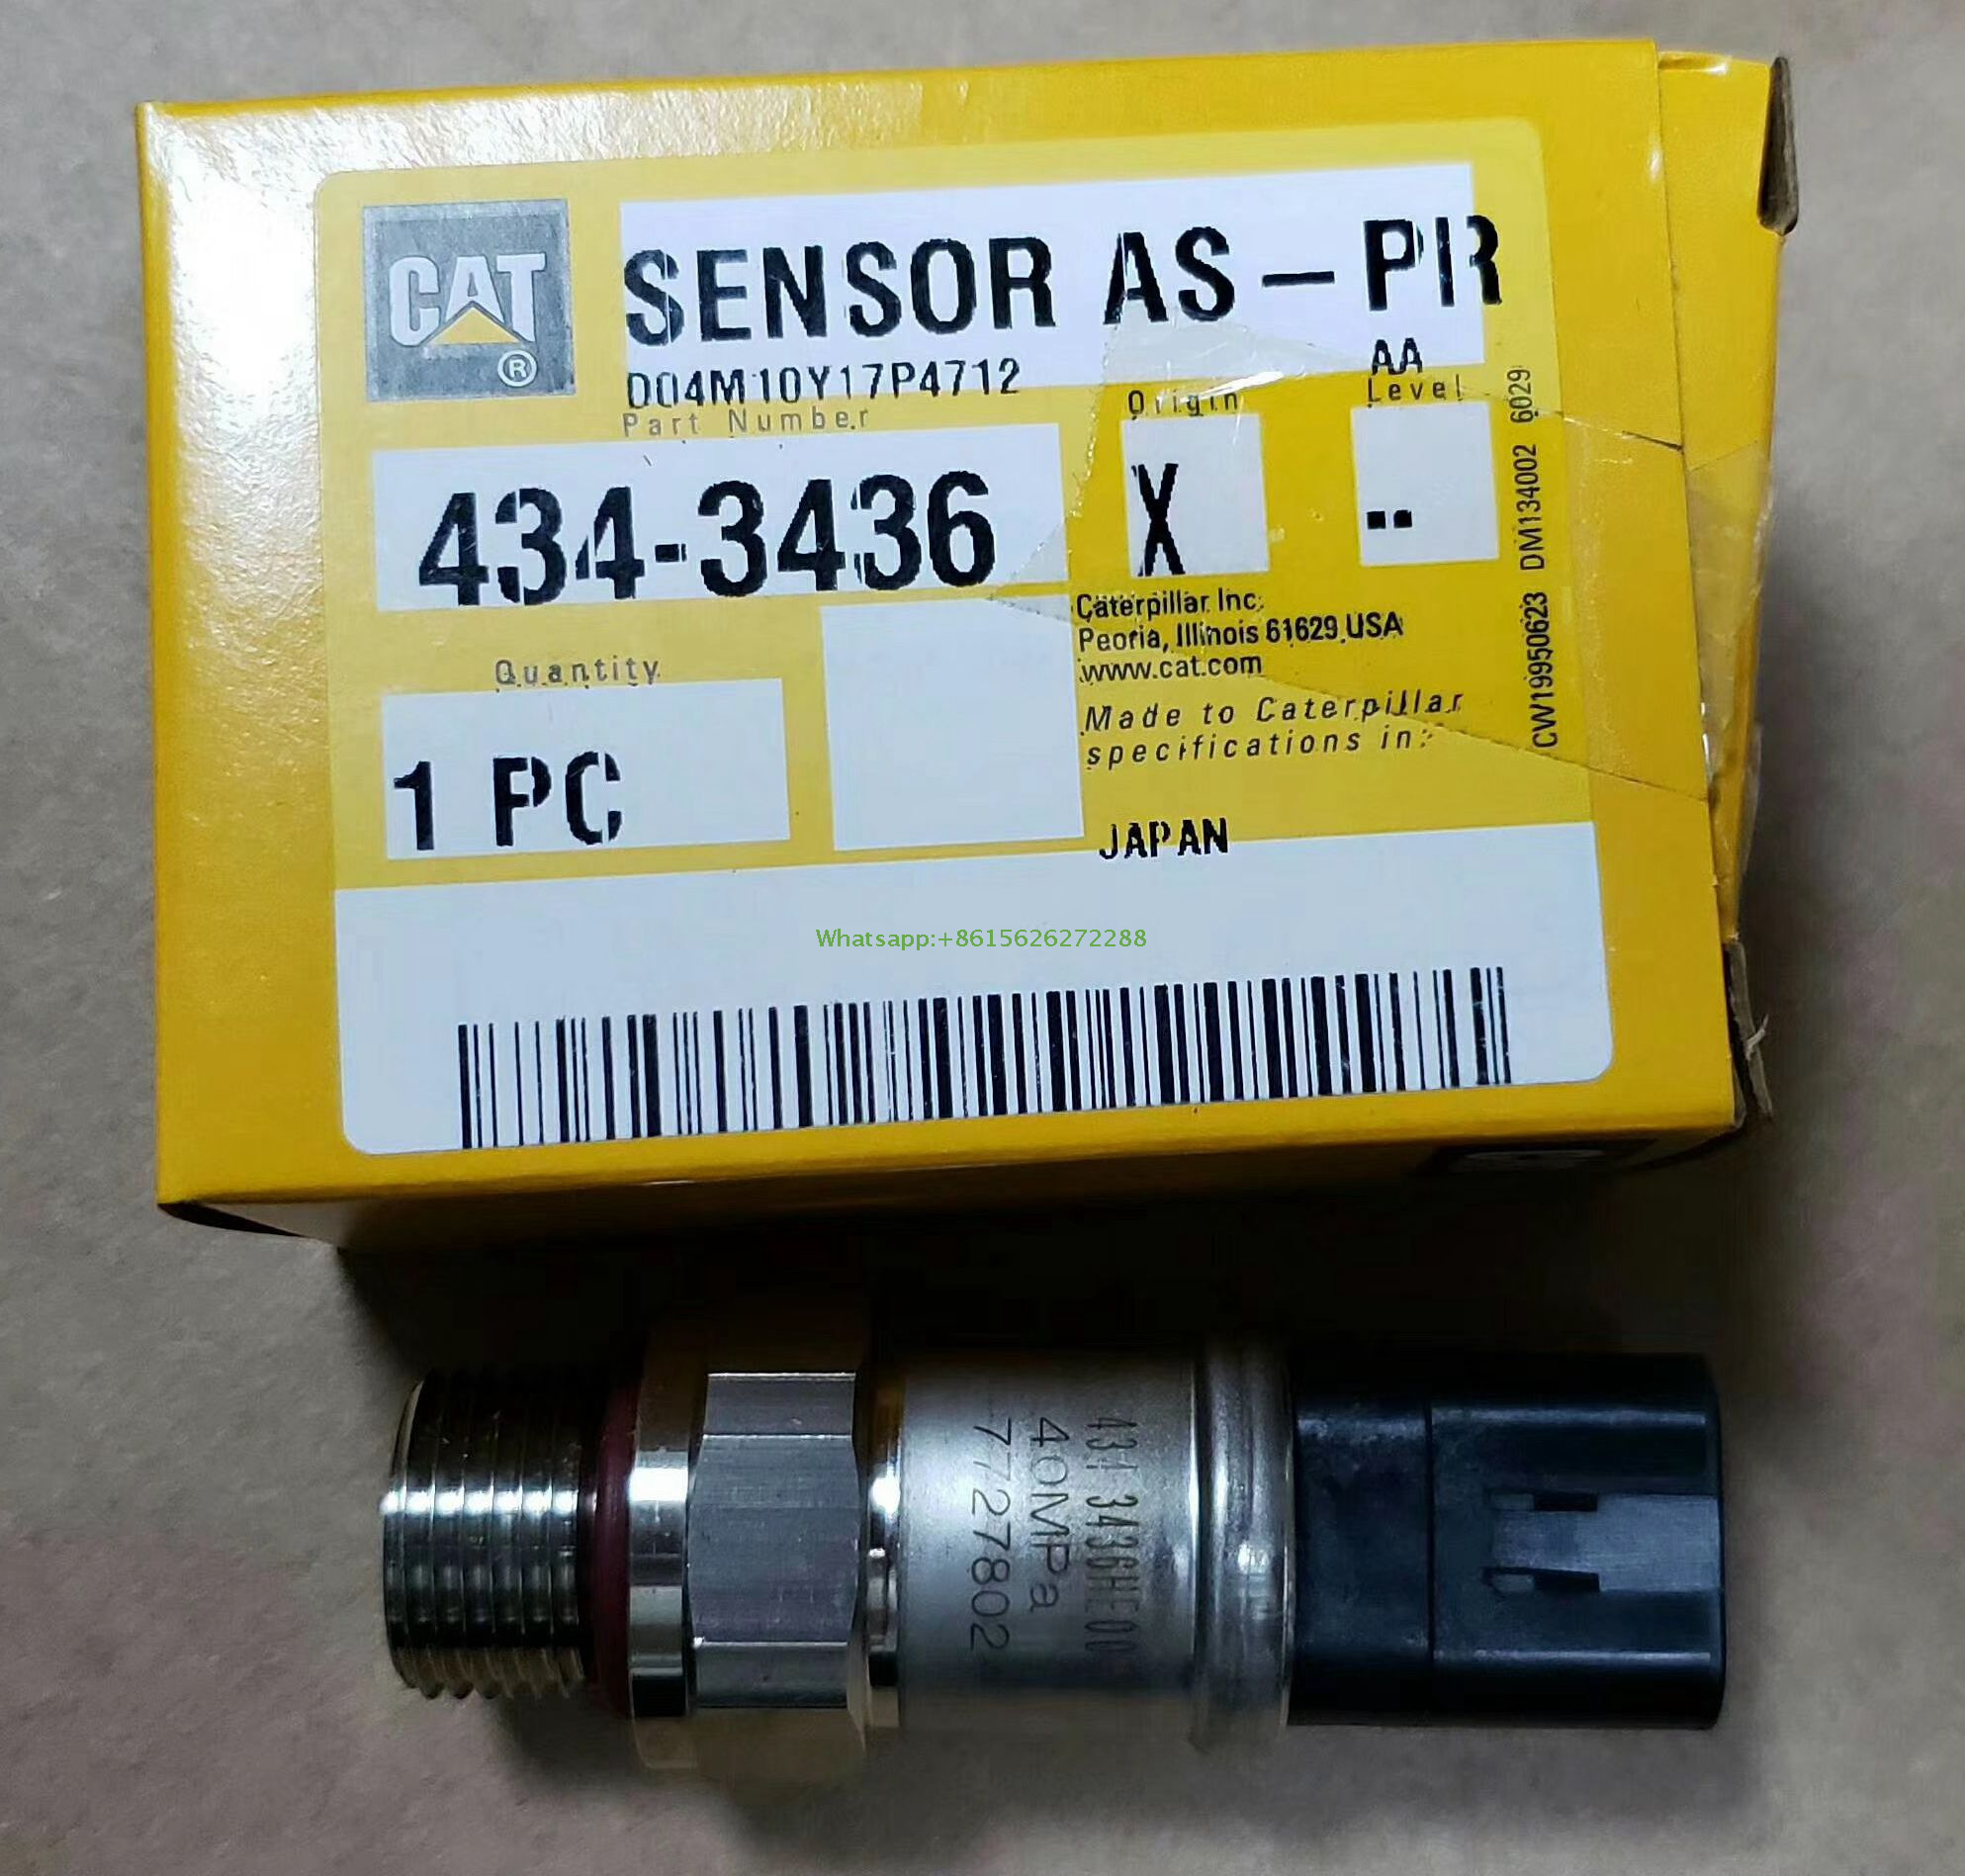  Caterpillar sensor as-pr 4343436 